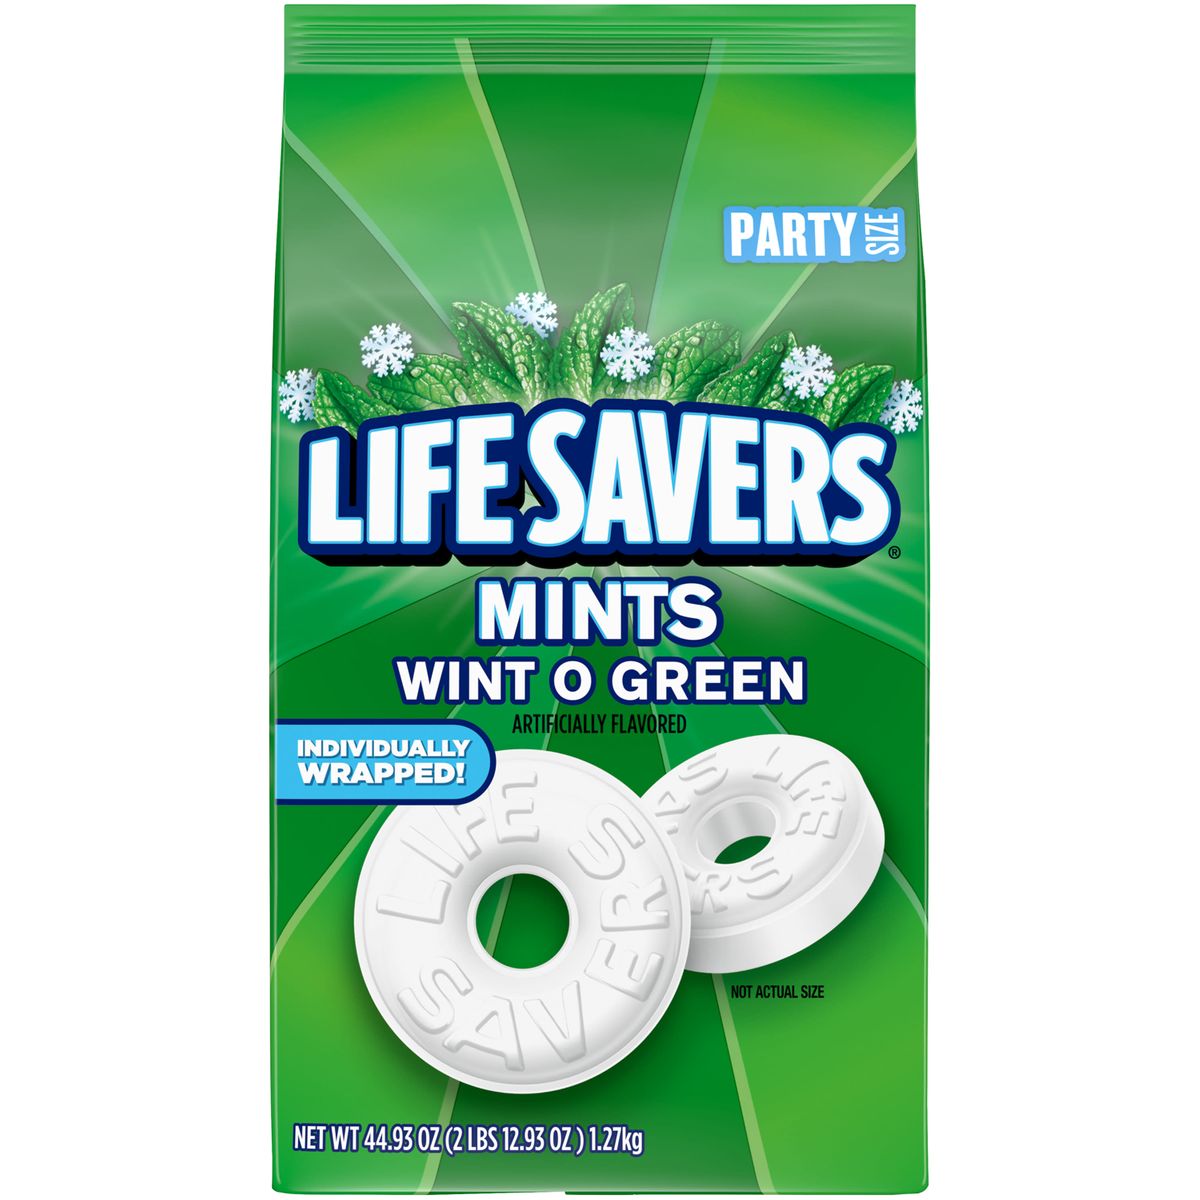 楽天Walmart 楽天市場店[RDY] [送料無料] Life Savers Wint-O-Green Breath Mint ハードキャンディー パーティーサイズ - 44.93オンス袋 [楽天海外通販] | Life Savers Wint-O-Green Breath Mint Hard Candy, Party Size - 44.93 oz Bag